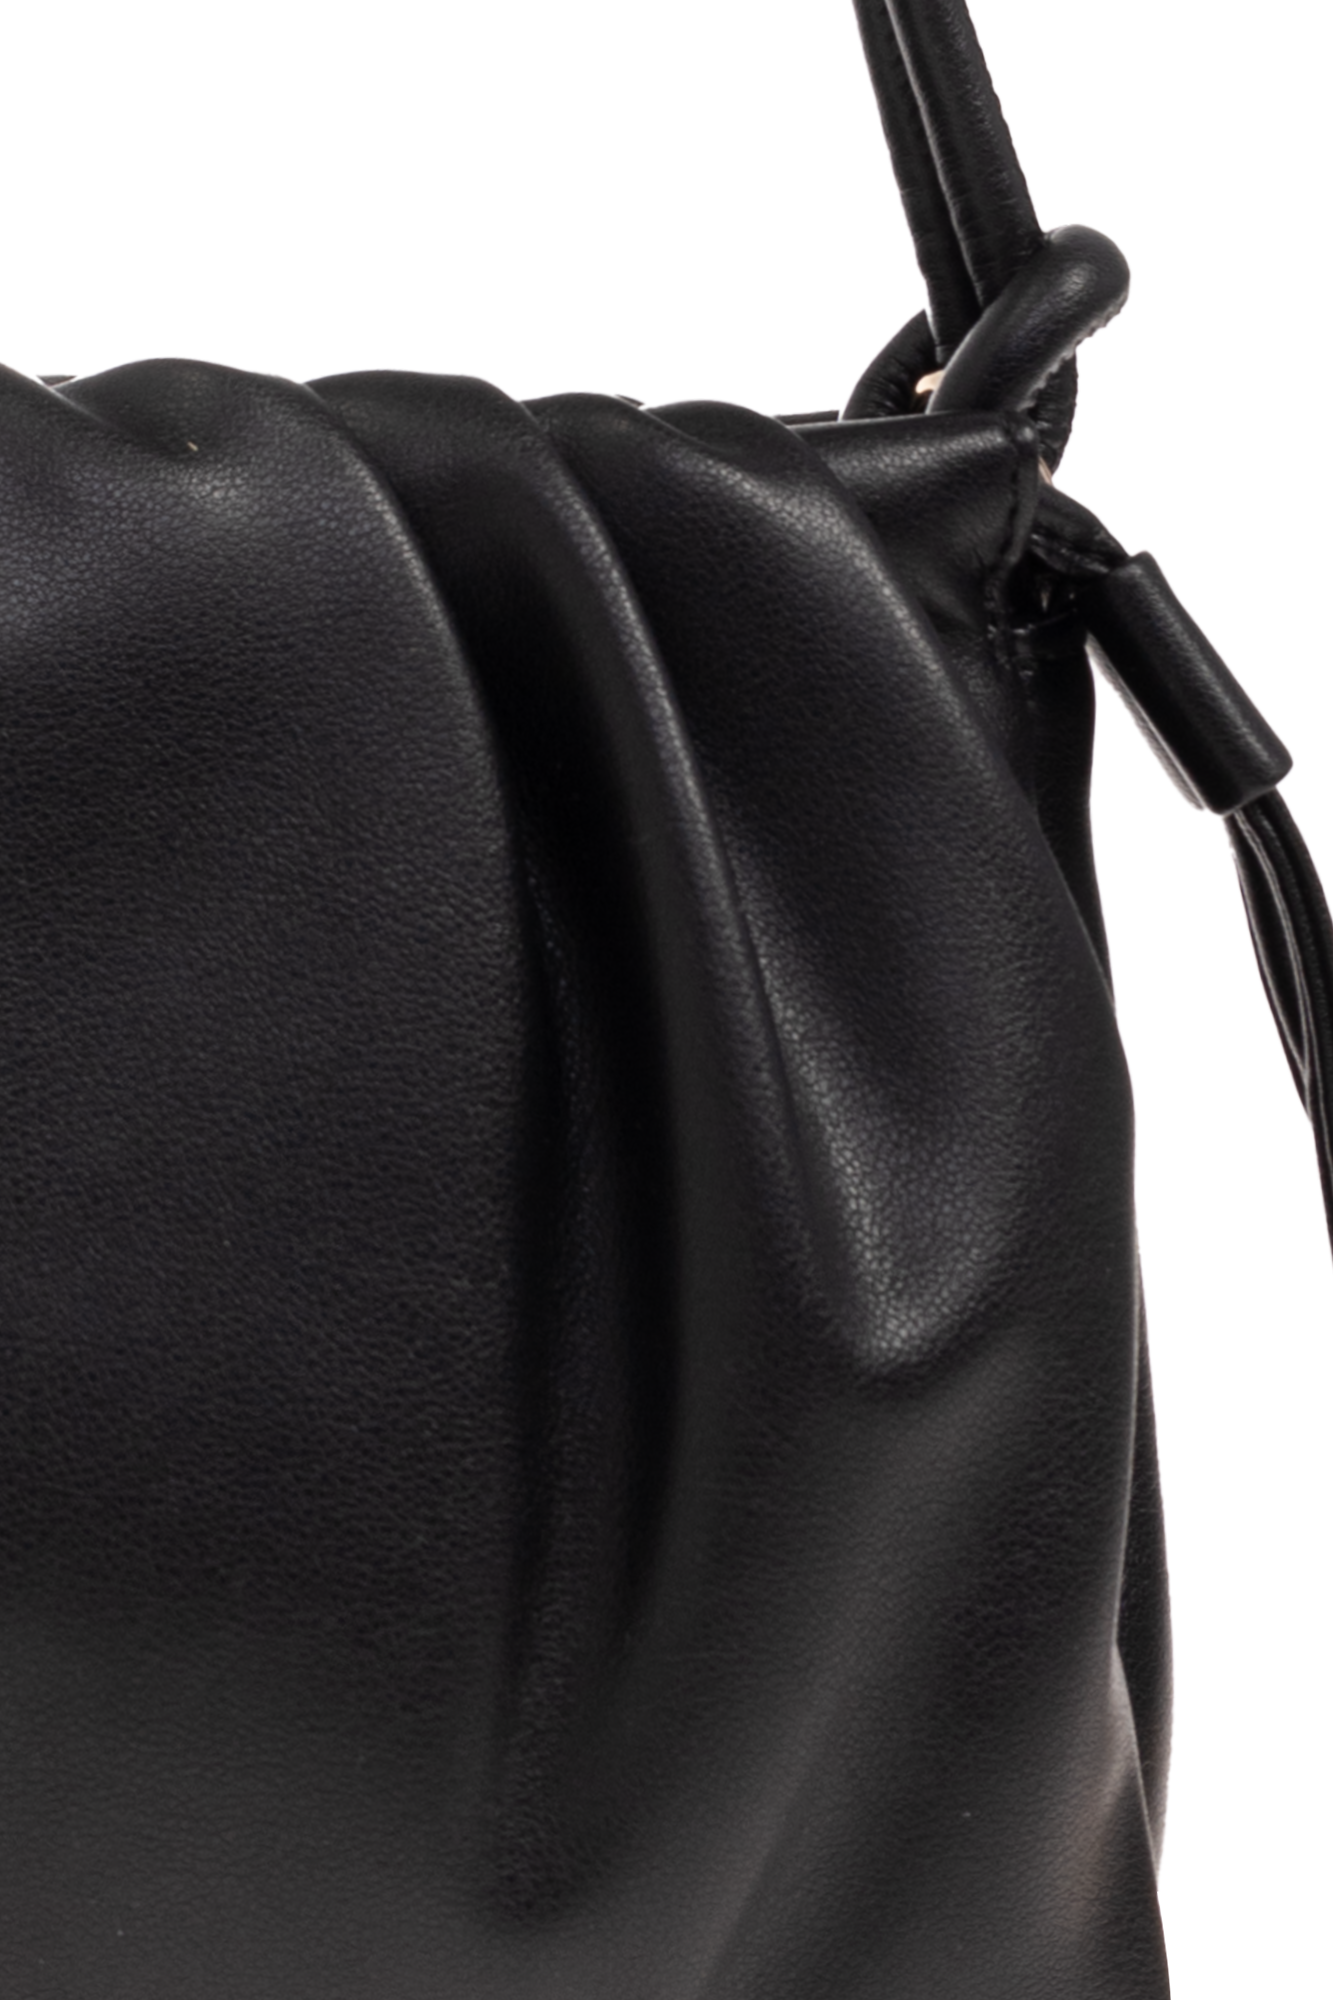 A.P.C. ‘Ninon Mini’ shoulder bag